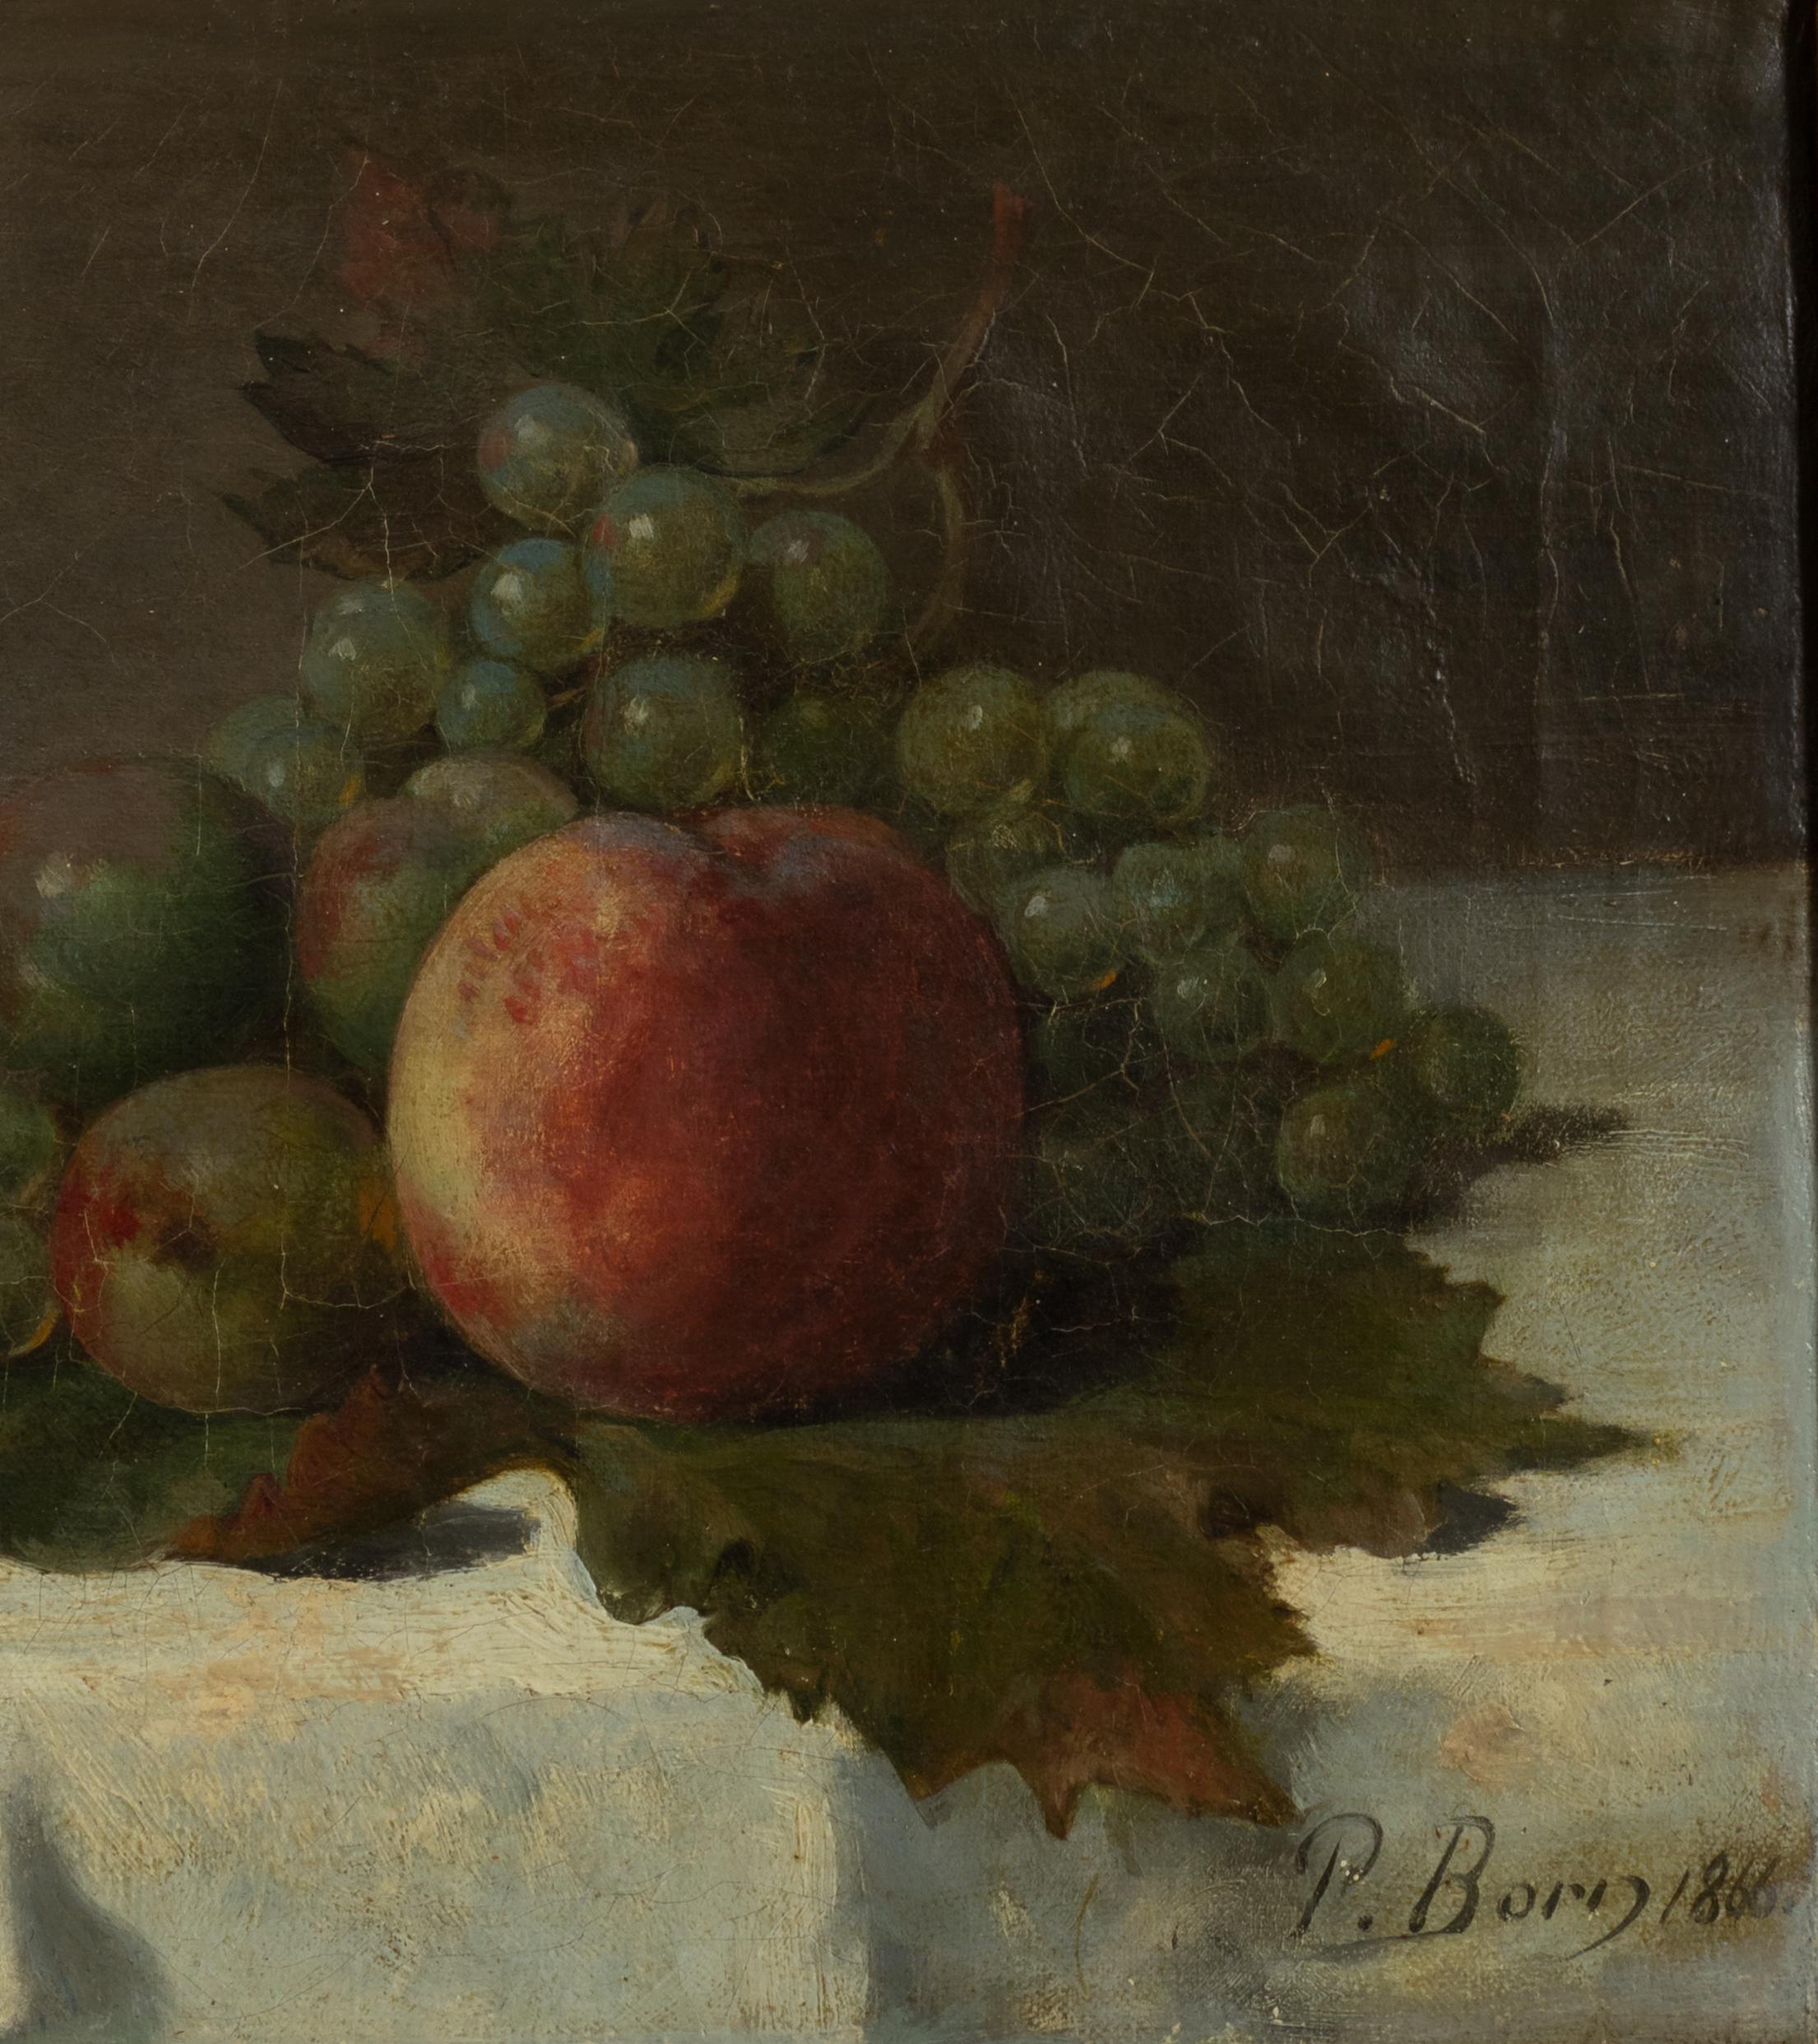 Nature morte à l'huile sur toile du 19e siècle. 
Représentation datée de 1866 de pommes et de raisins posés sur une feuille de vigne.
Signature de 